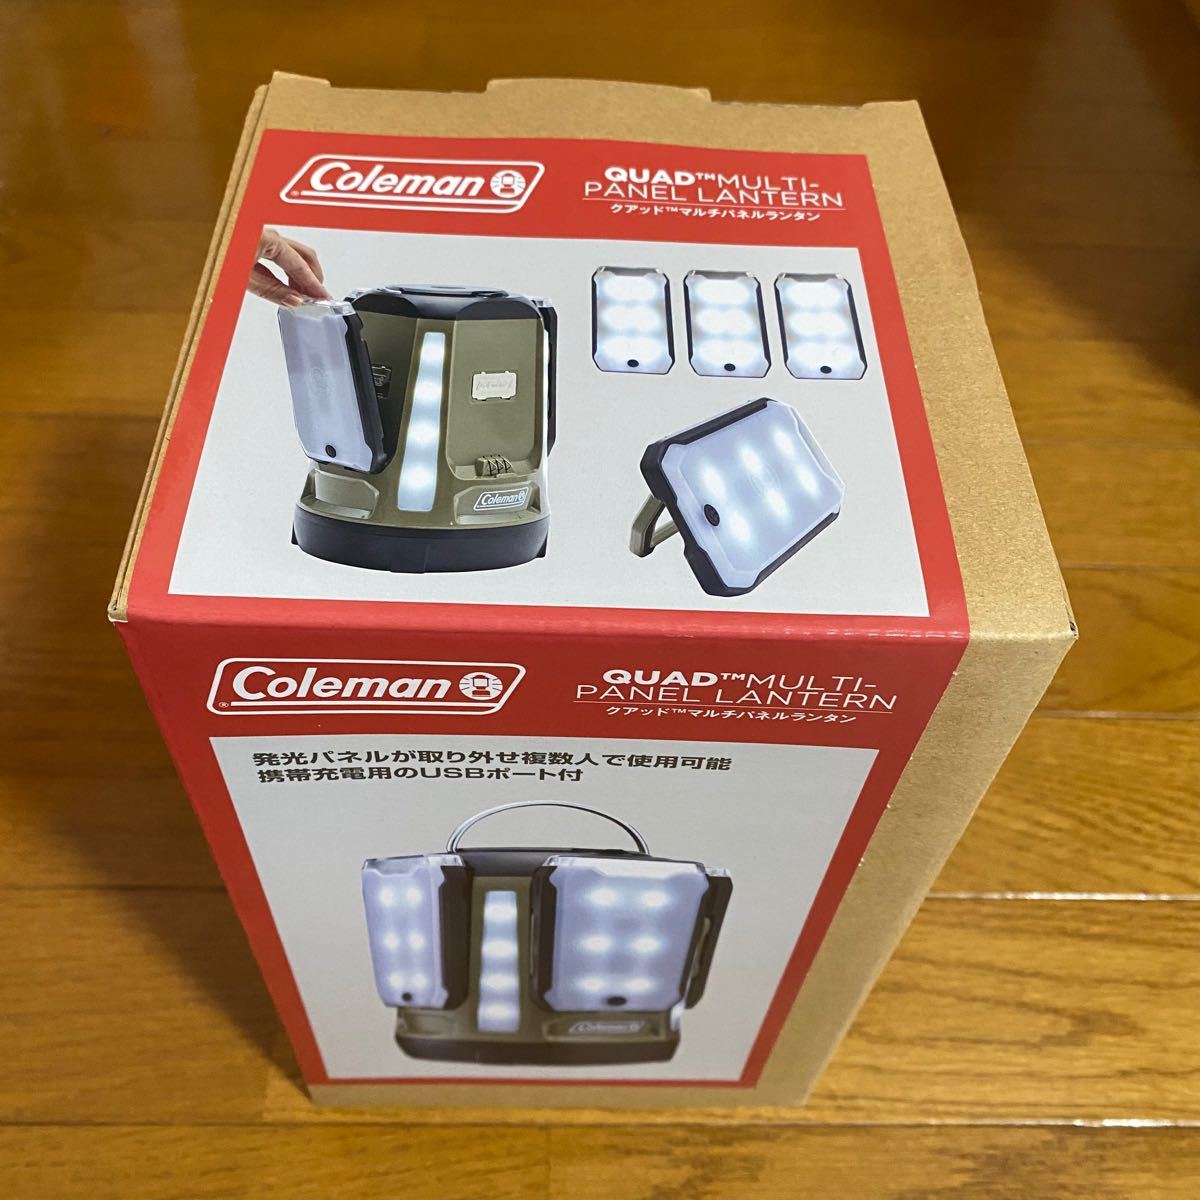 【新品未使用】コールマン ランタン マルチパネルランタン LED 乾電池式  2/3/4マルチパネル ランタン Coleman